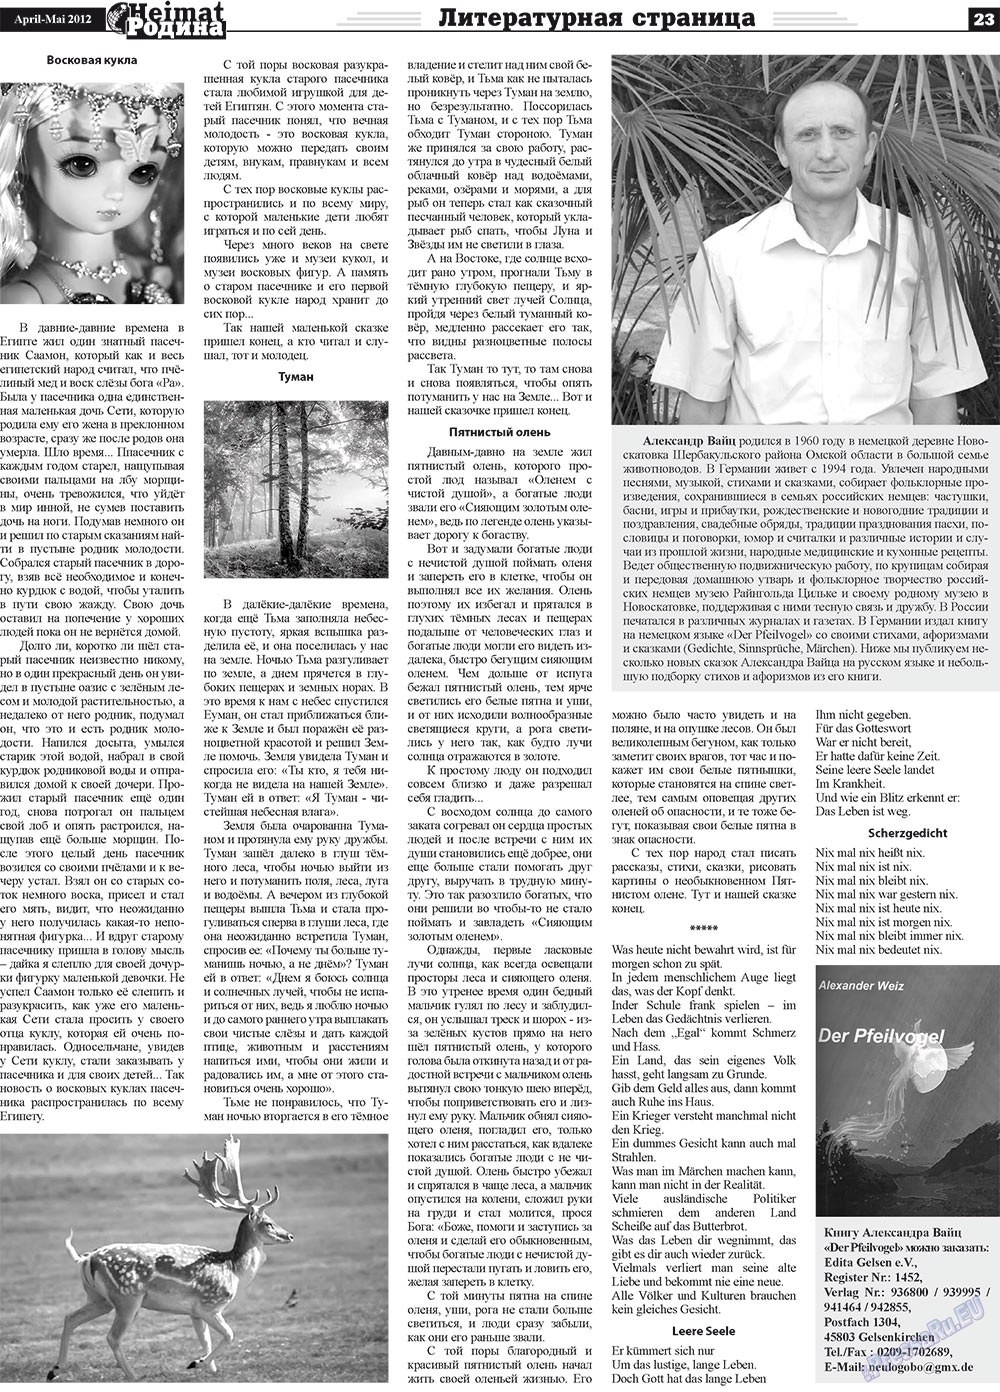 Heimat-Родина (газета). 2012 год, номер 4, стр. 23